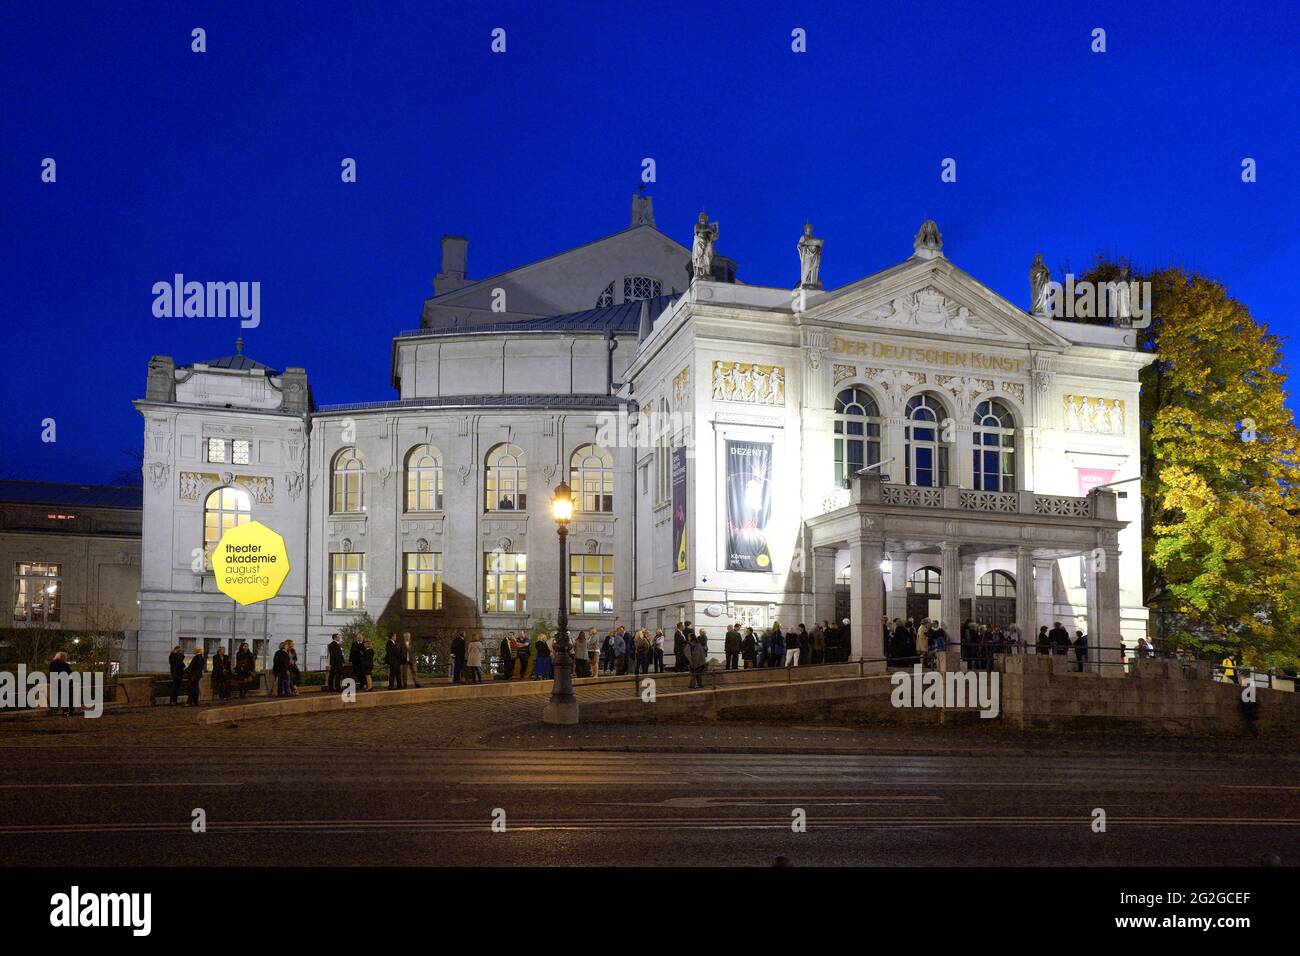 Deutschland, Bayern, München, Prinzregententheater, am Abend, Eine lange Schlange von Besuchern wartet auf den Eintritt Stockfoto